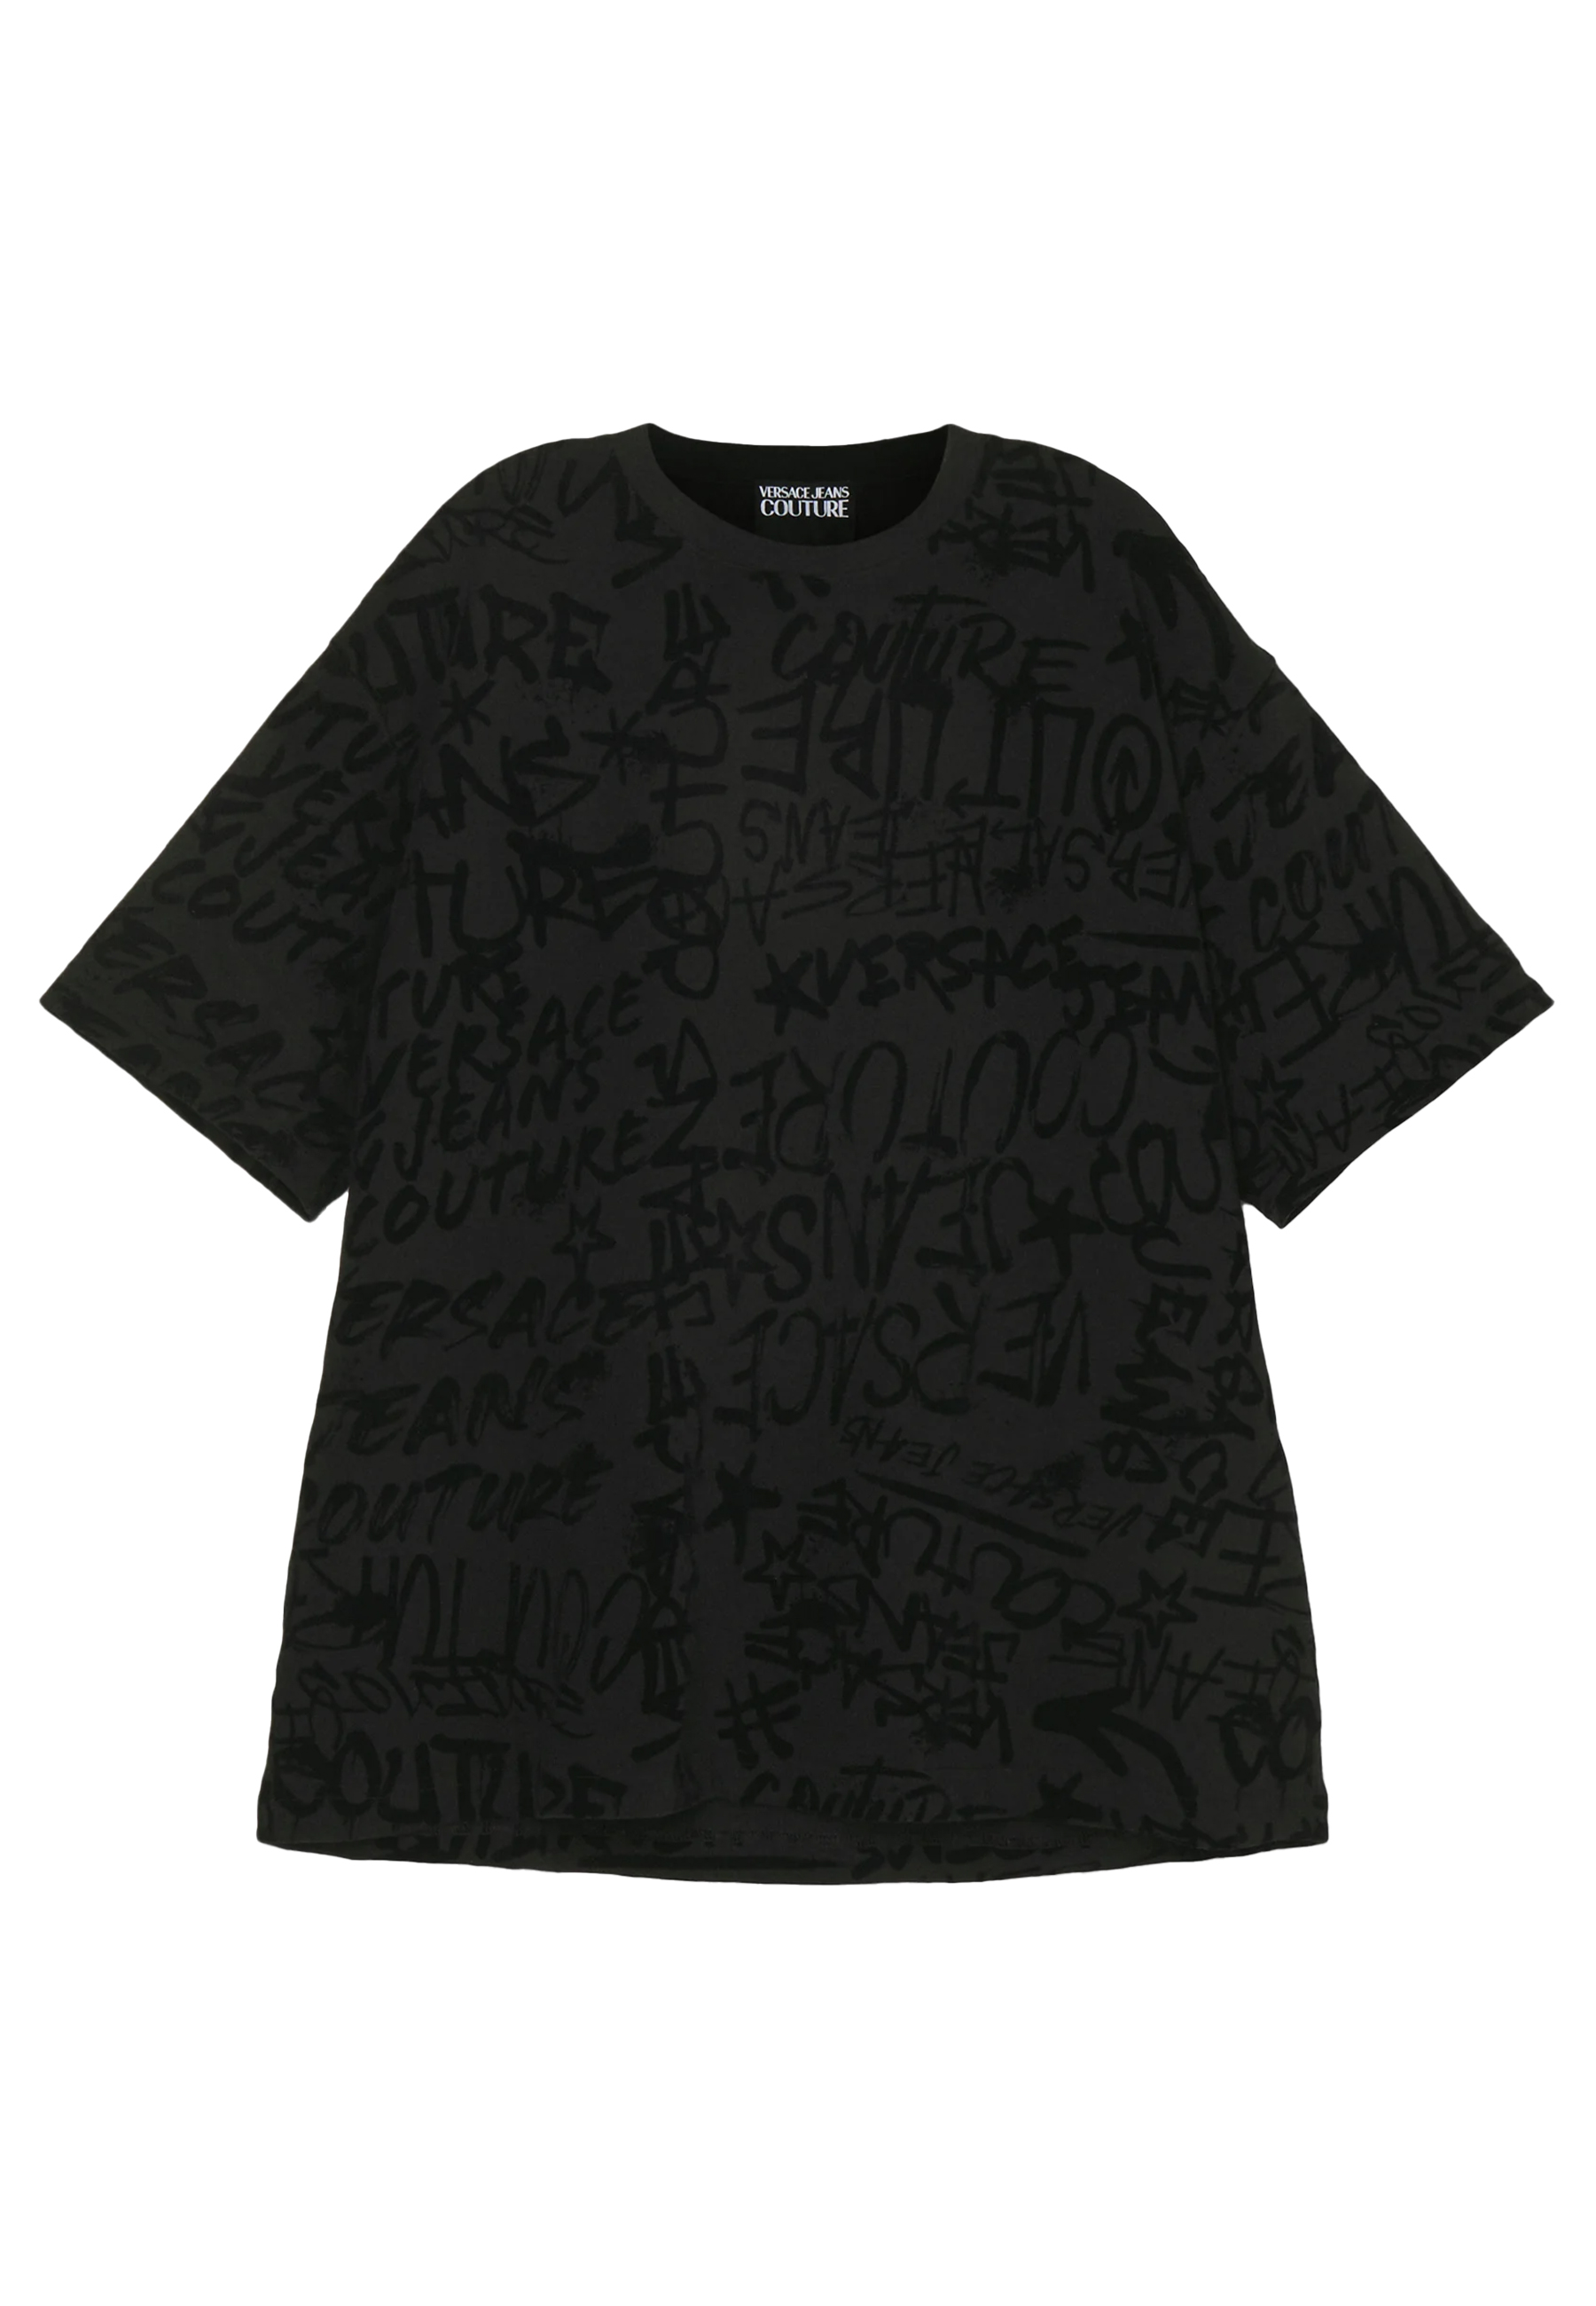 Versace Jeans Shirt Zwart Katoen maat XL t-shirts zwart